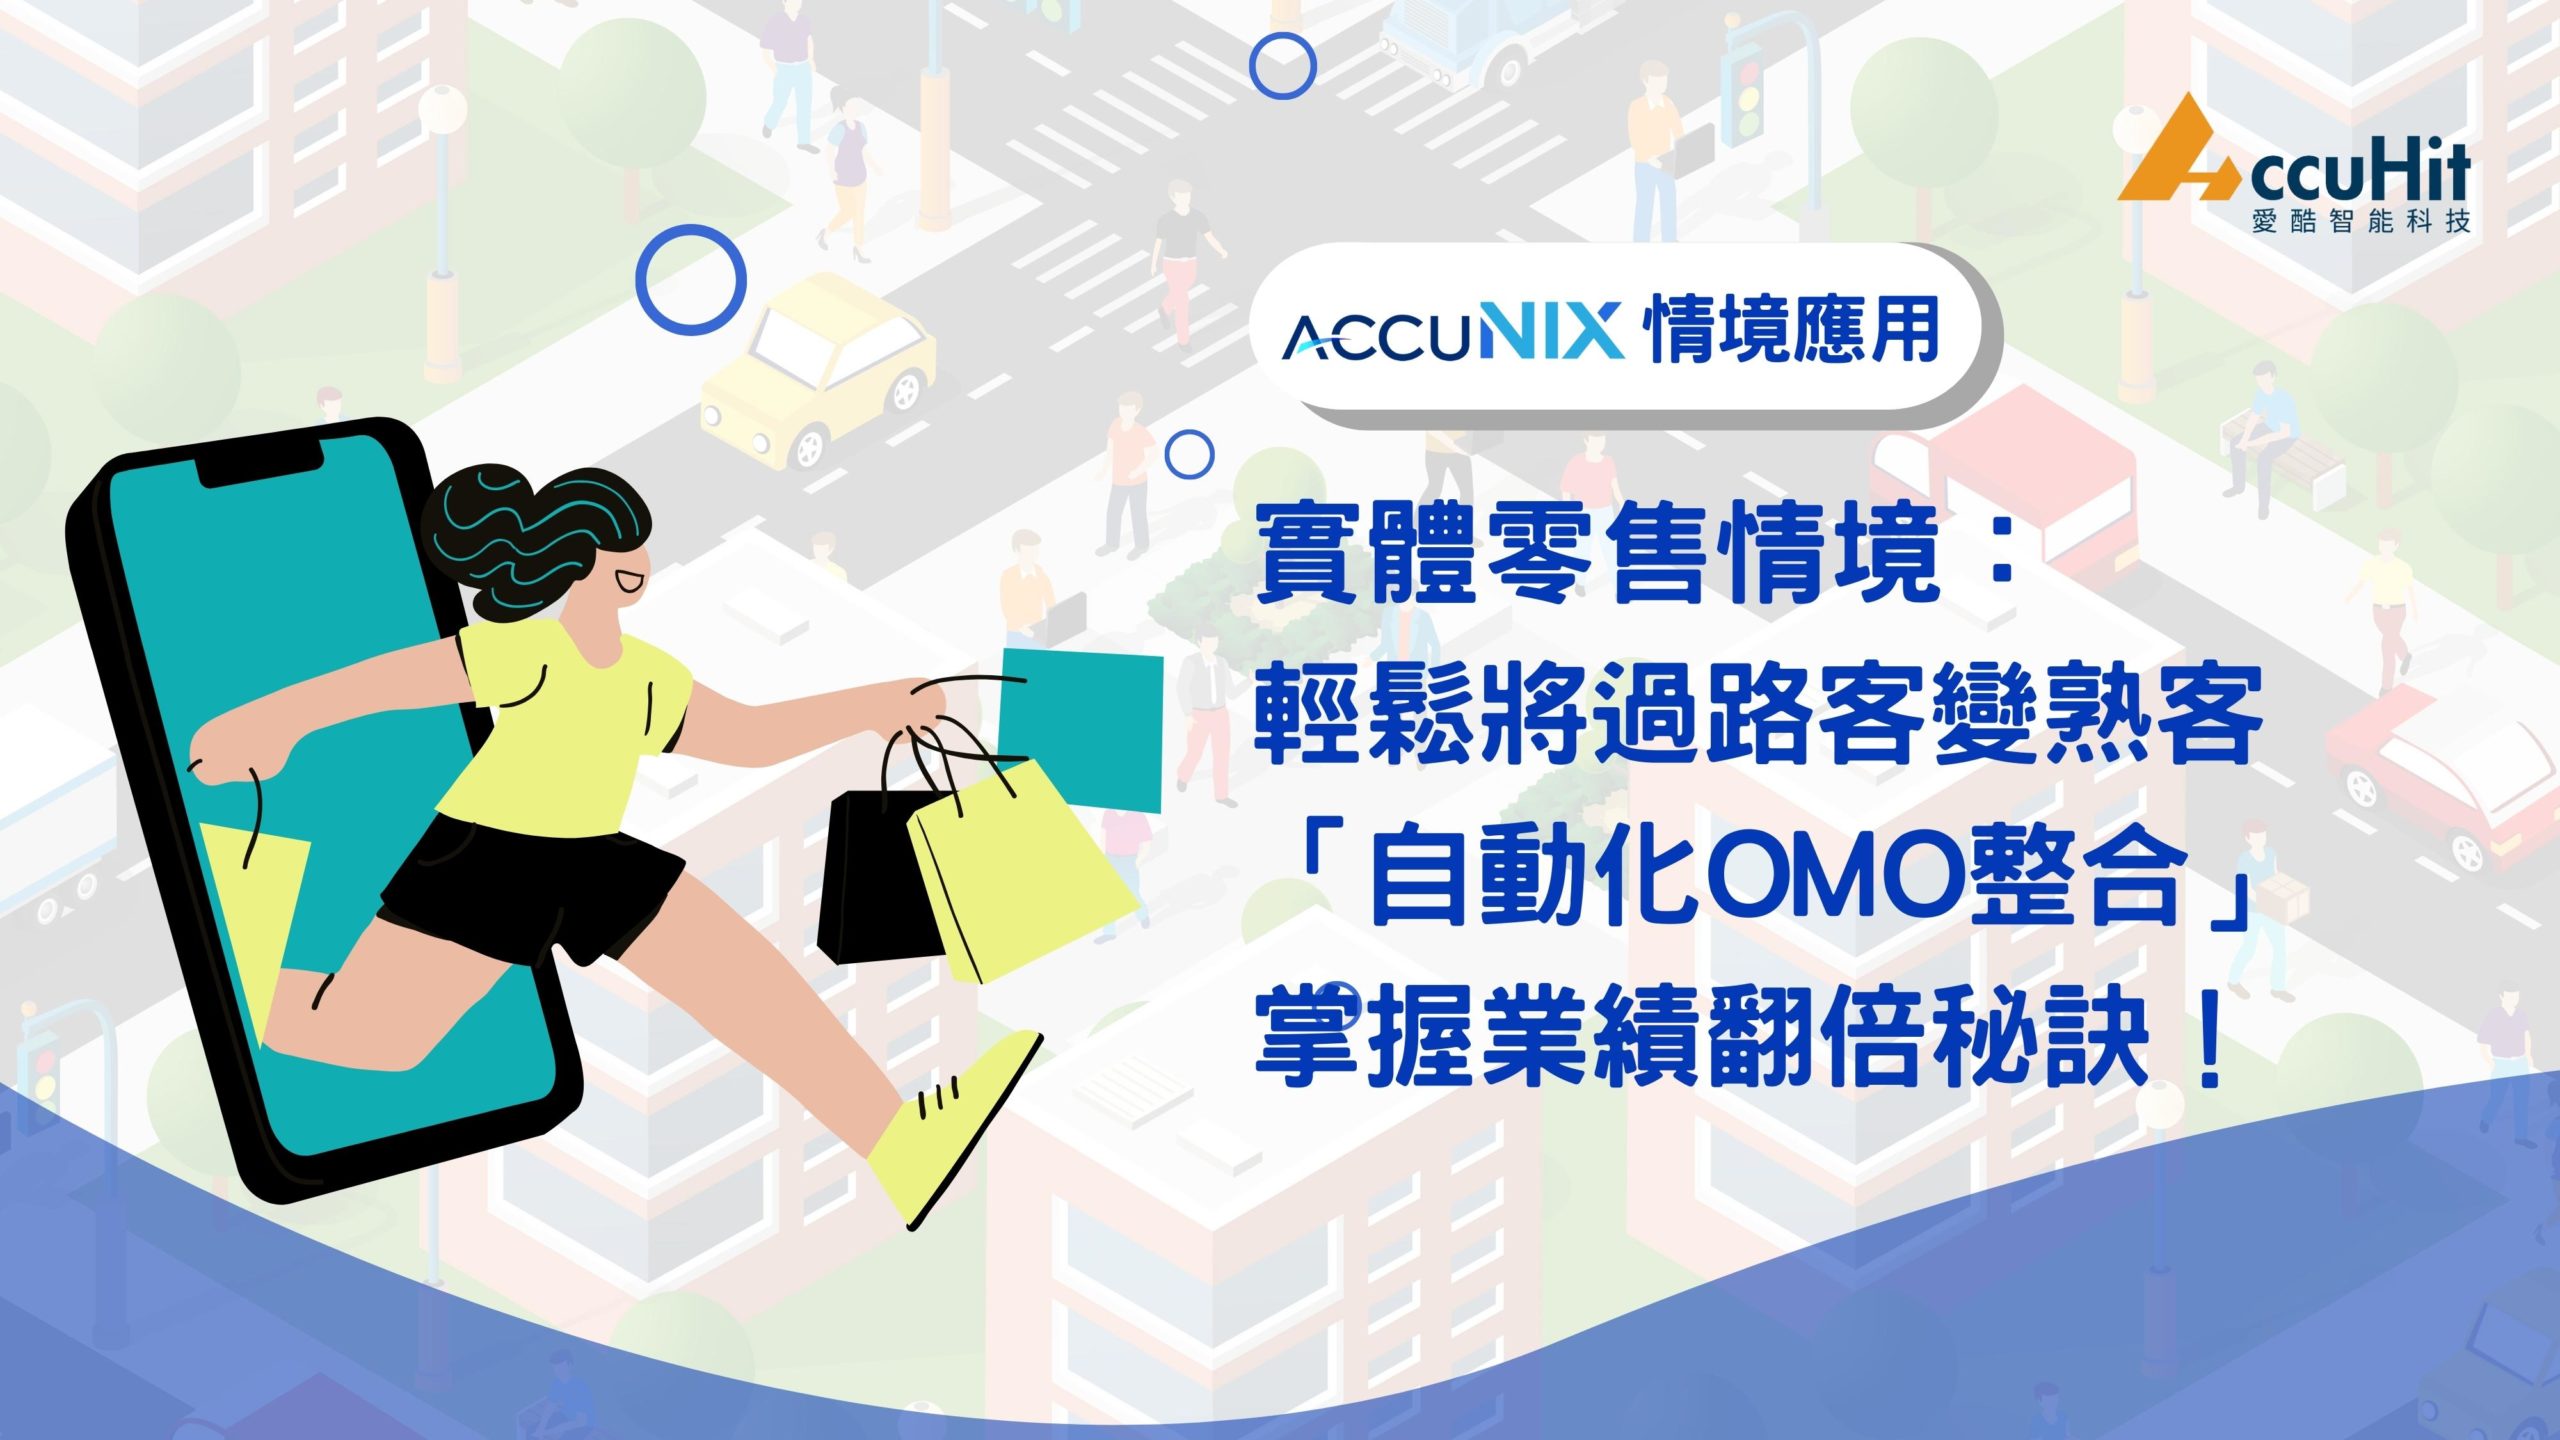 AccuNix-實體零售情境：輕鬆將訪客變熟客「自動化OMO整合再行銷」掌握業績翻倍秘訣，虛實融合全攻略！